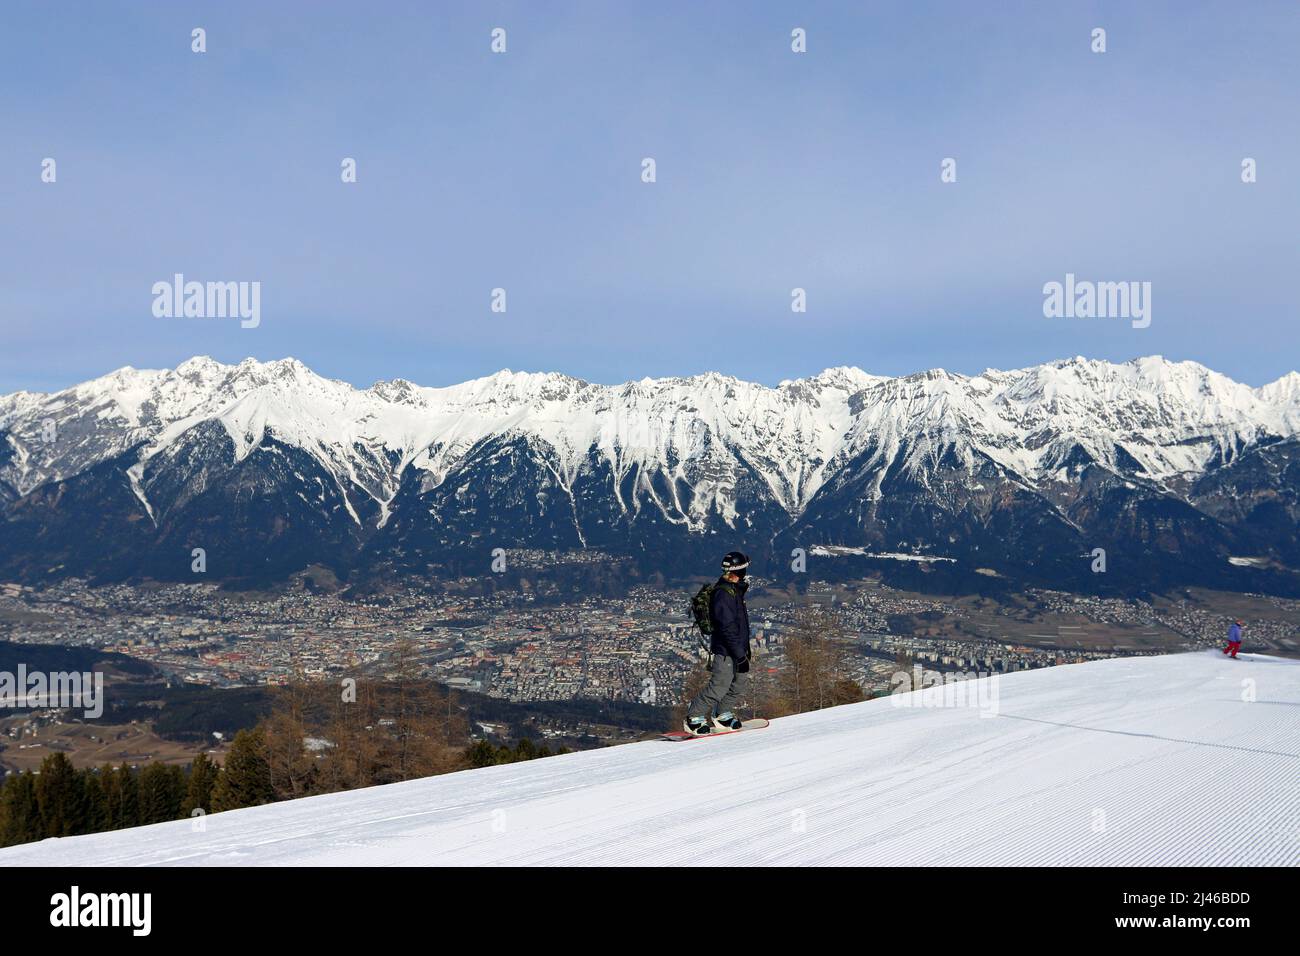 Uno snowboarder si erge sul monte Patscherkofel. Innsbruck si estende sotto lo sfondo innevato della catena montuosa Nordkette Foto Stock